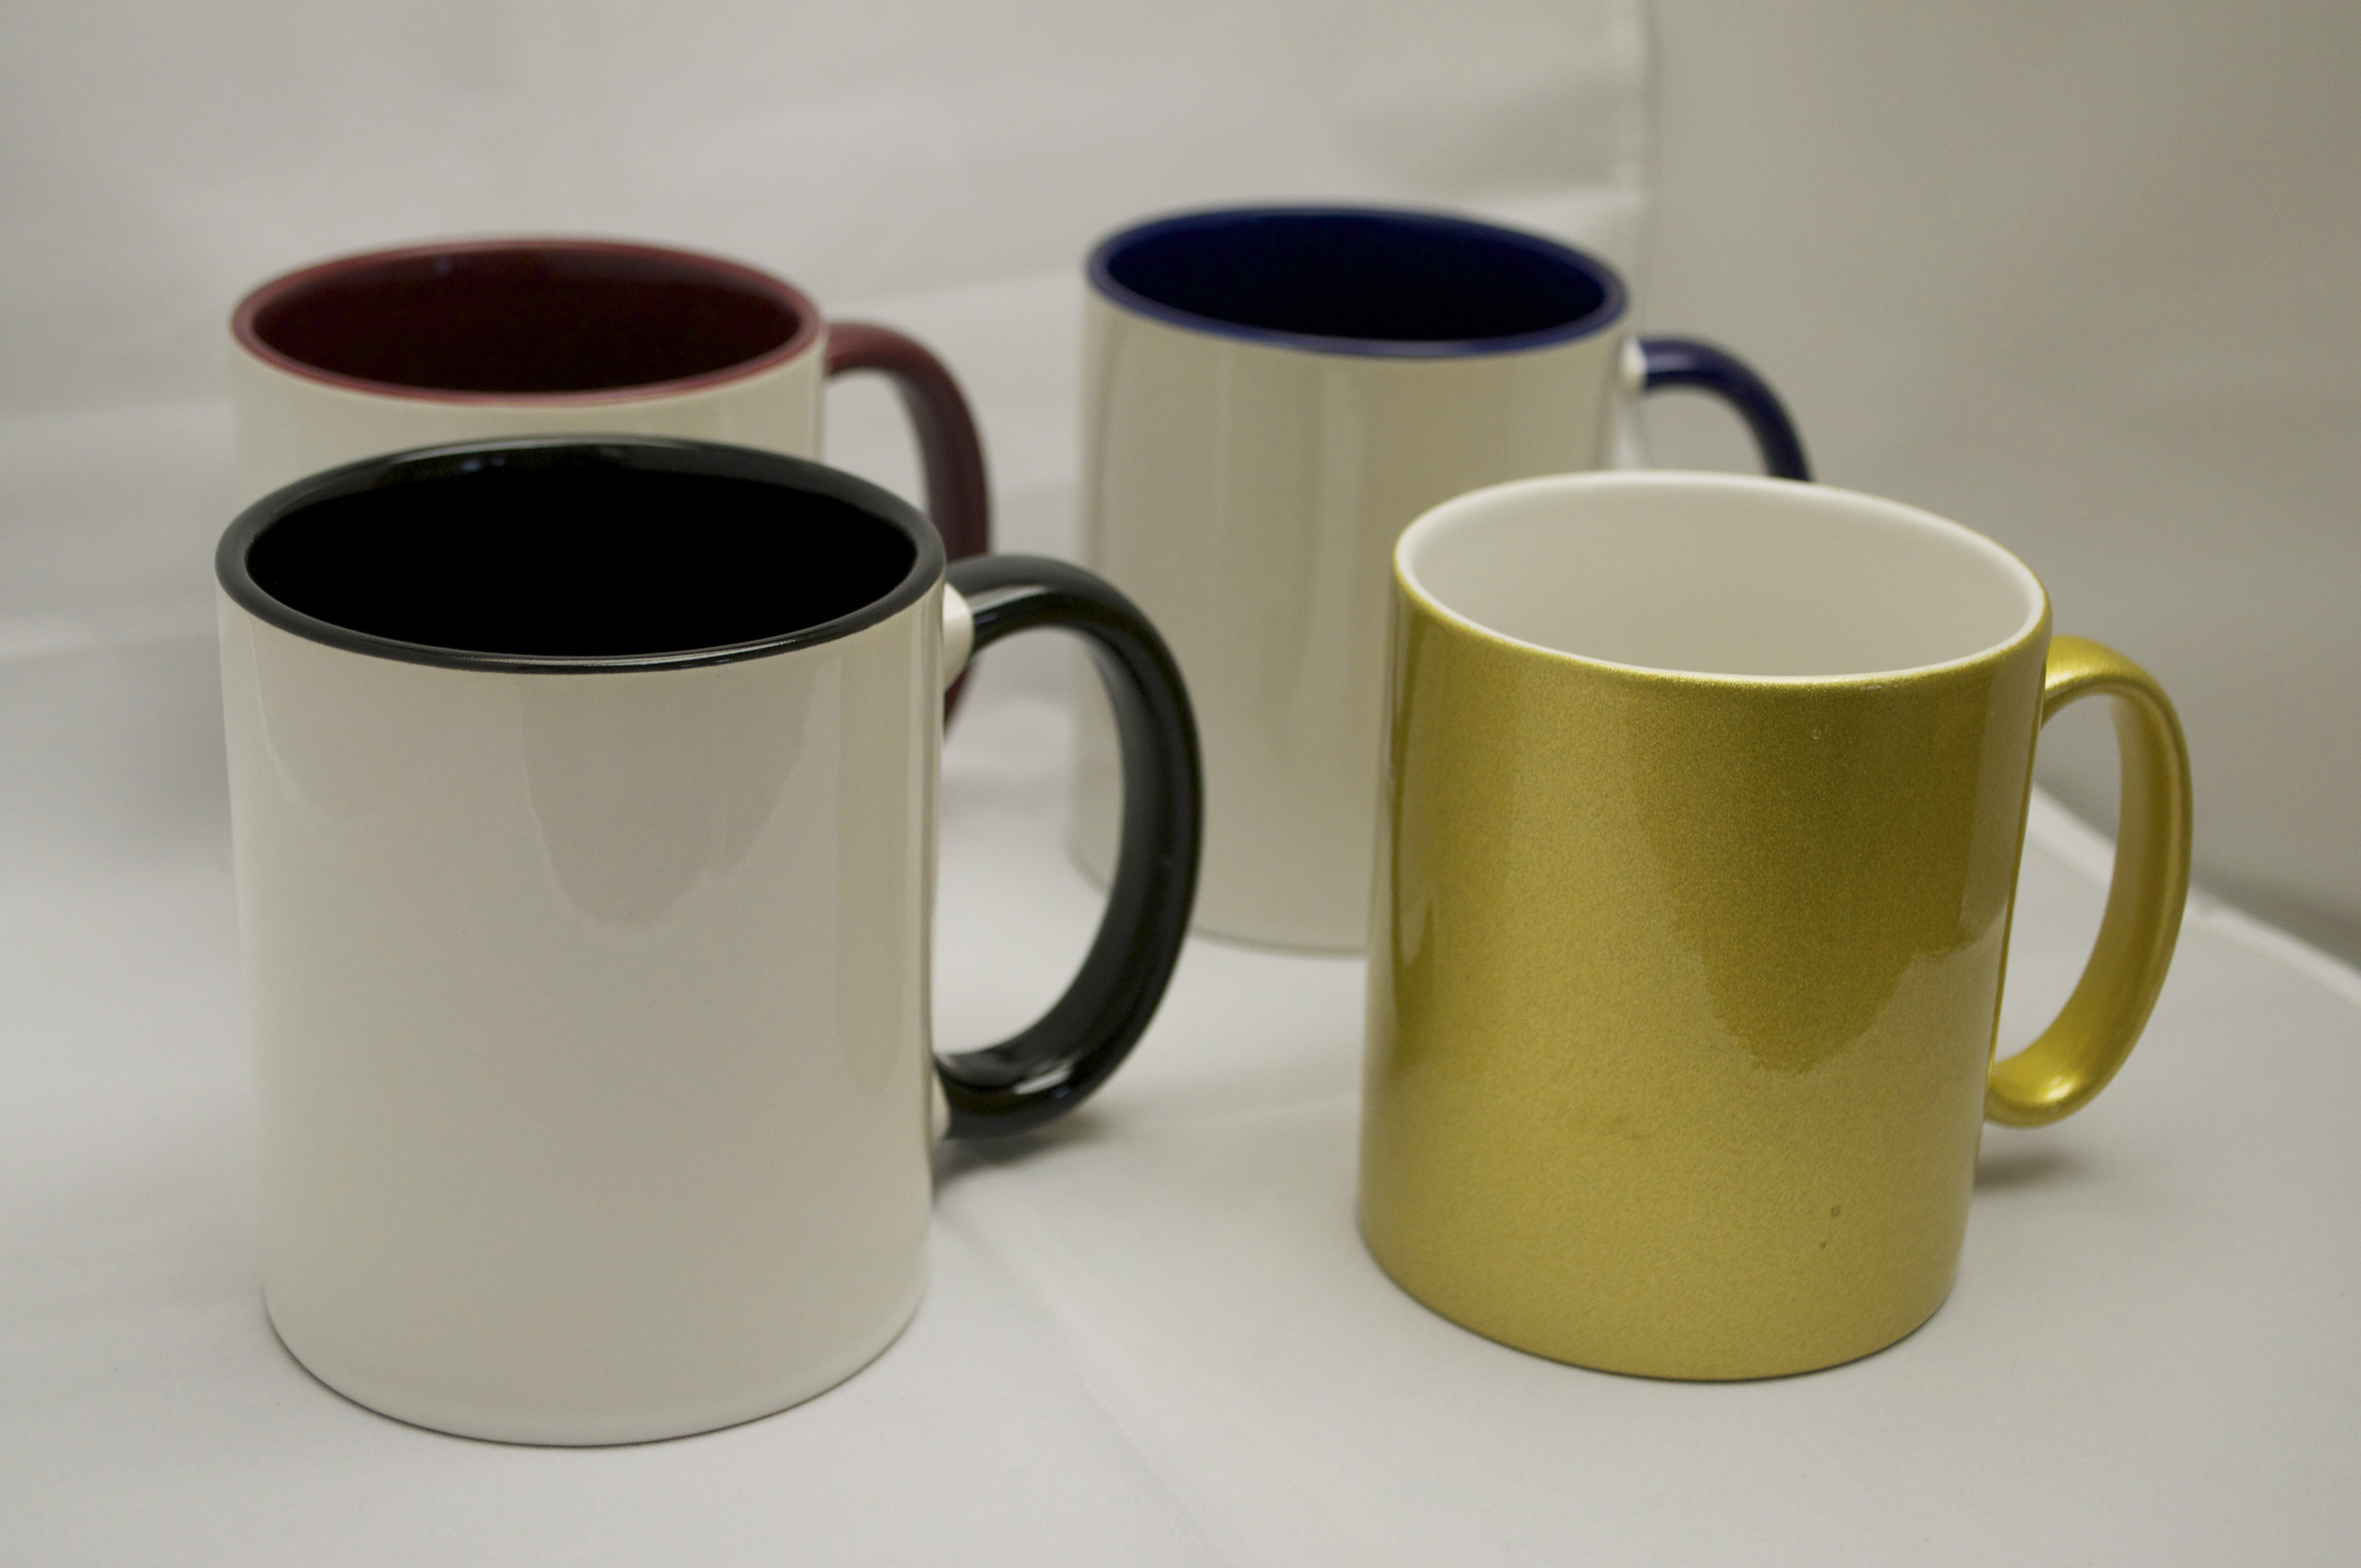 made in usa mugs